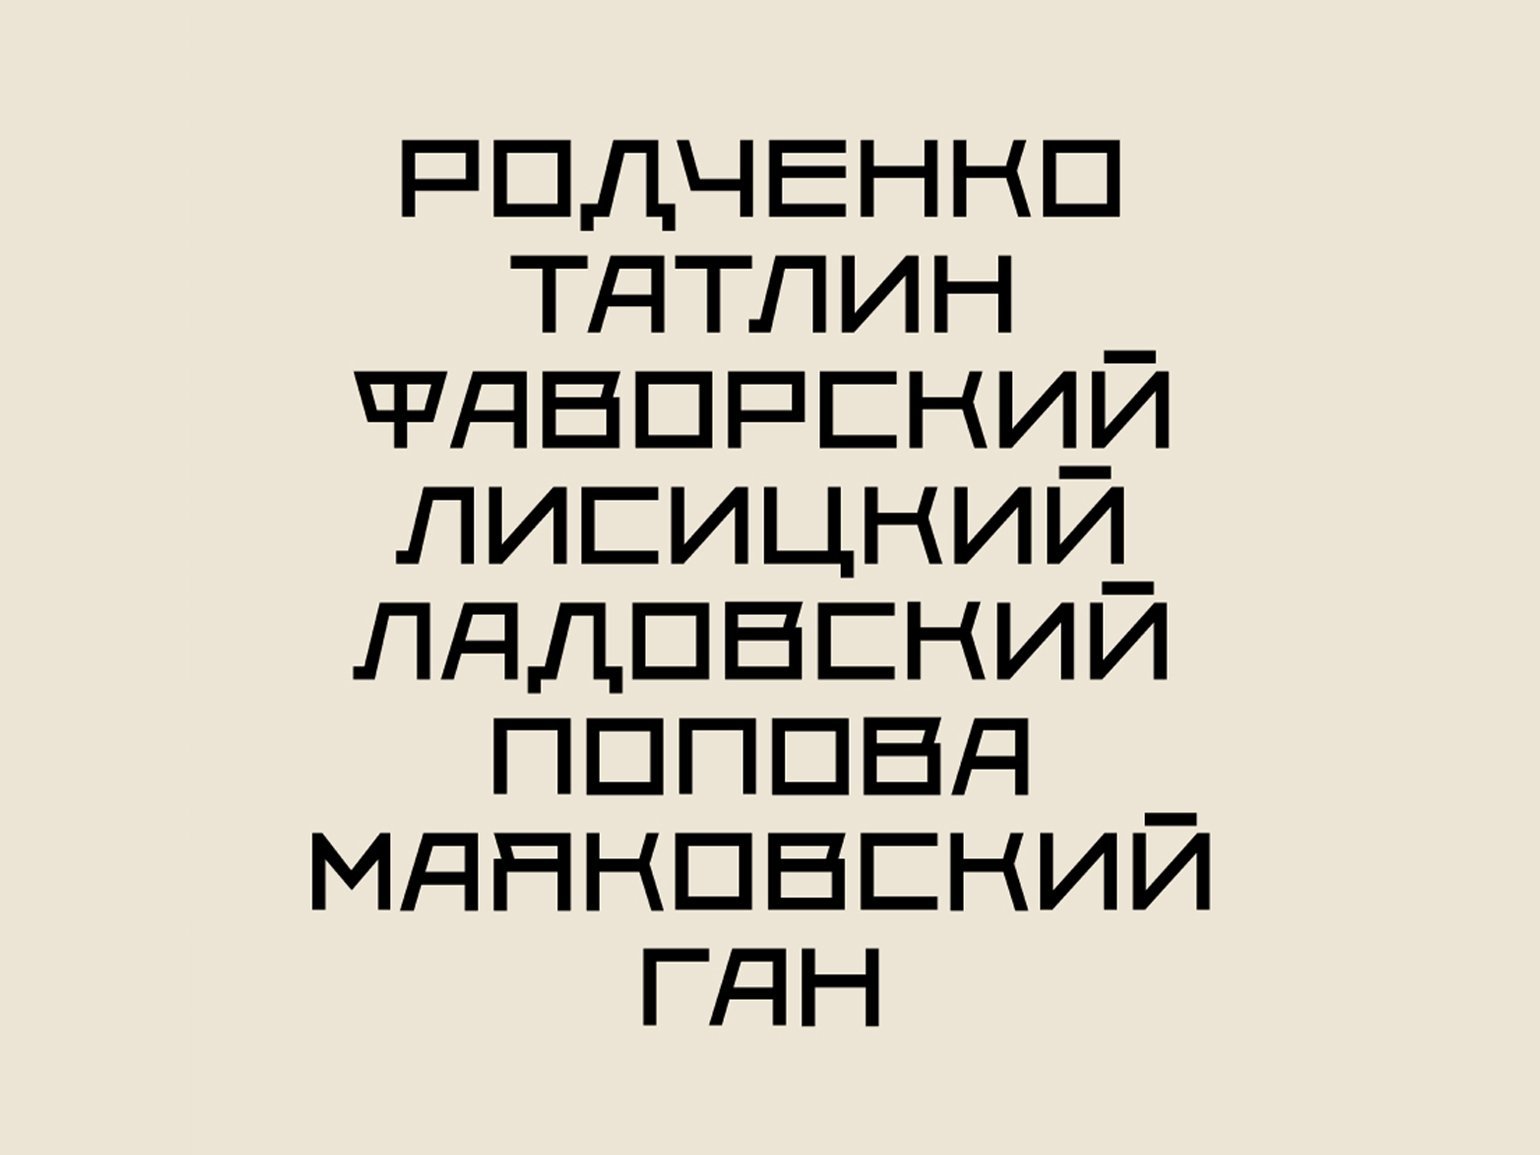 Пример алфавита, напечатанного бесплатным шрифтом без засечек ZodchiyПример использования бесплатного шрифта в стиле ВХУТЕМАСа Vkhutetype